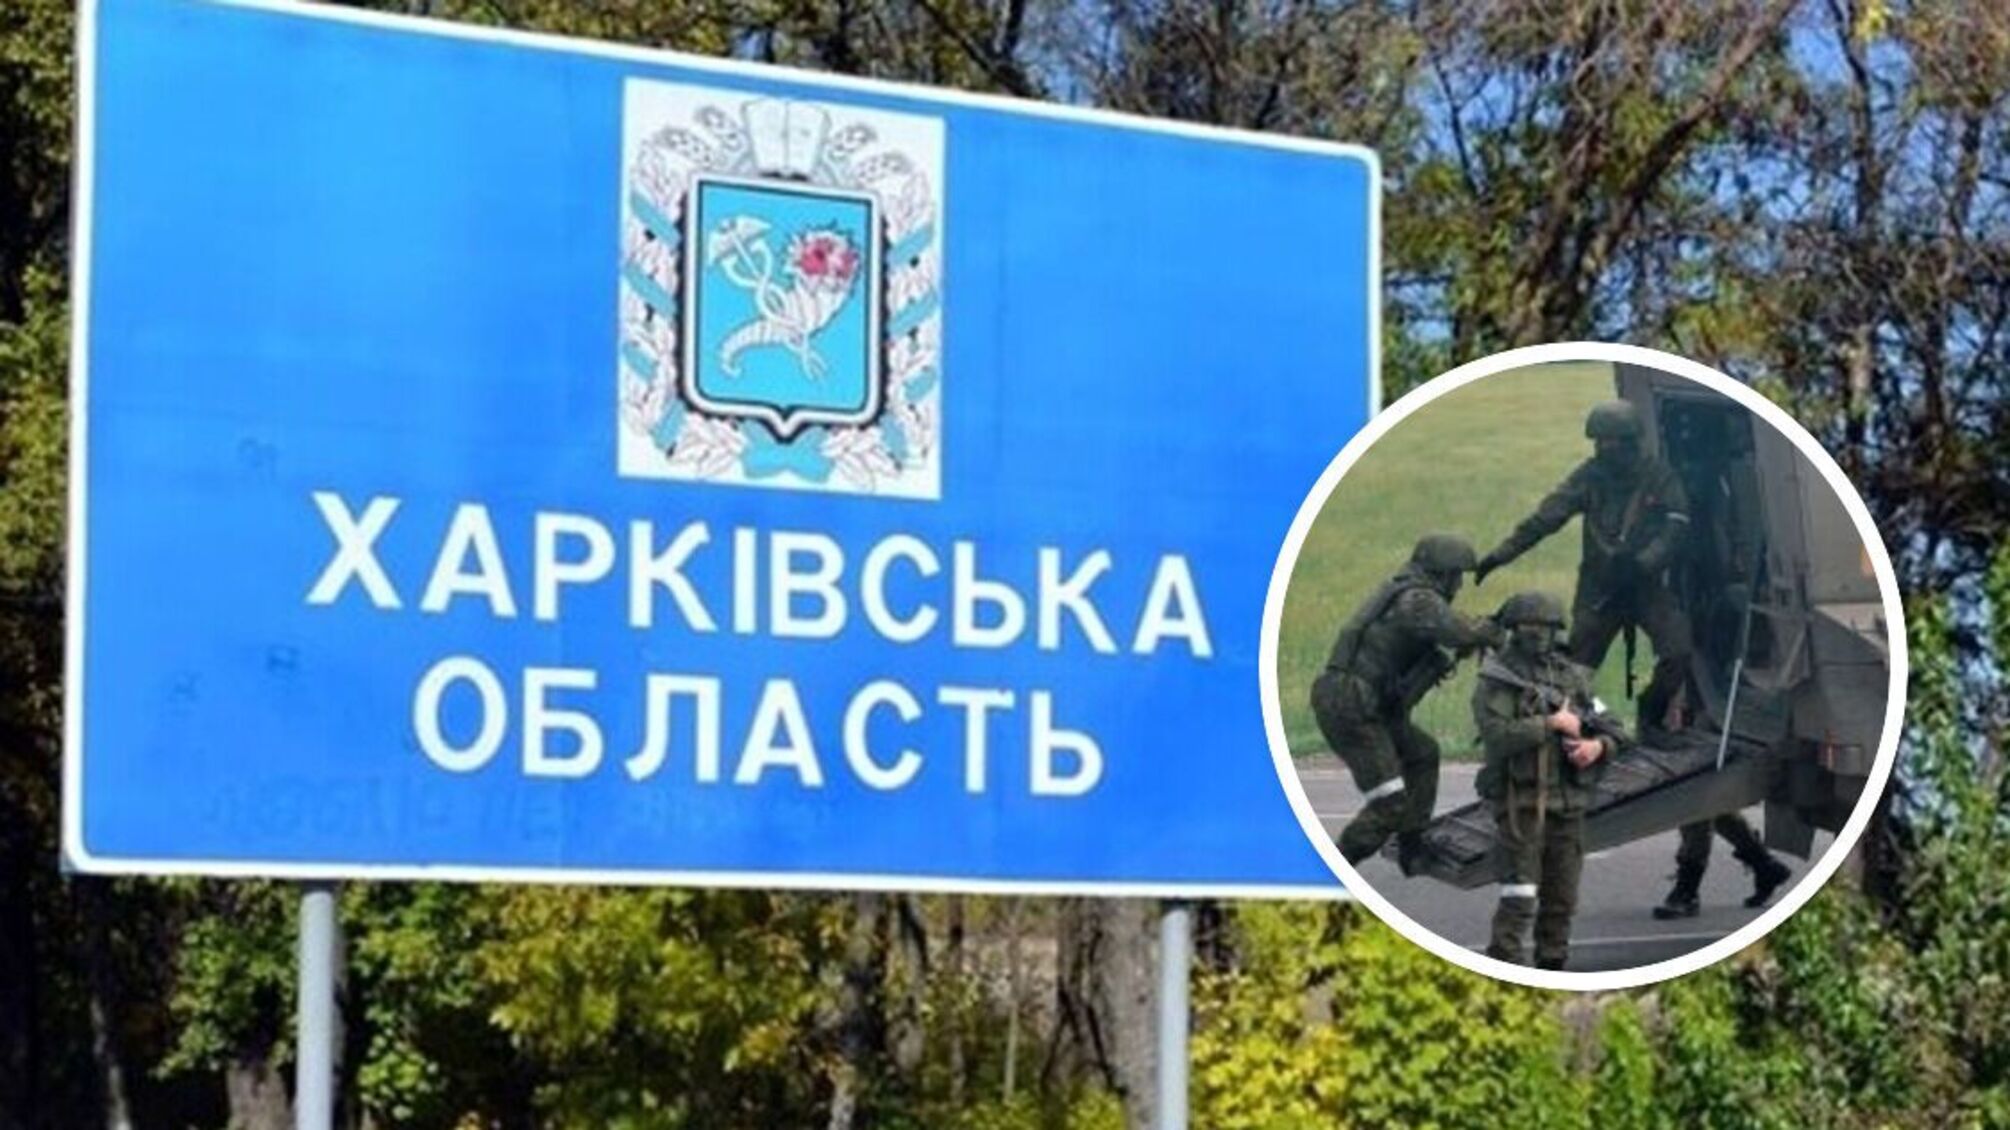 'Хотя бы на 3-4 дня': в Харьковской области российские захватчики объявили 'эвакуацию'